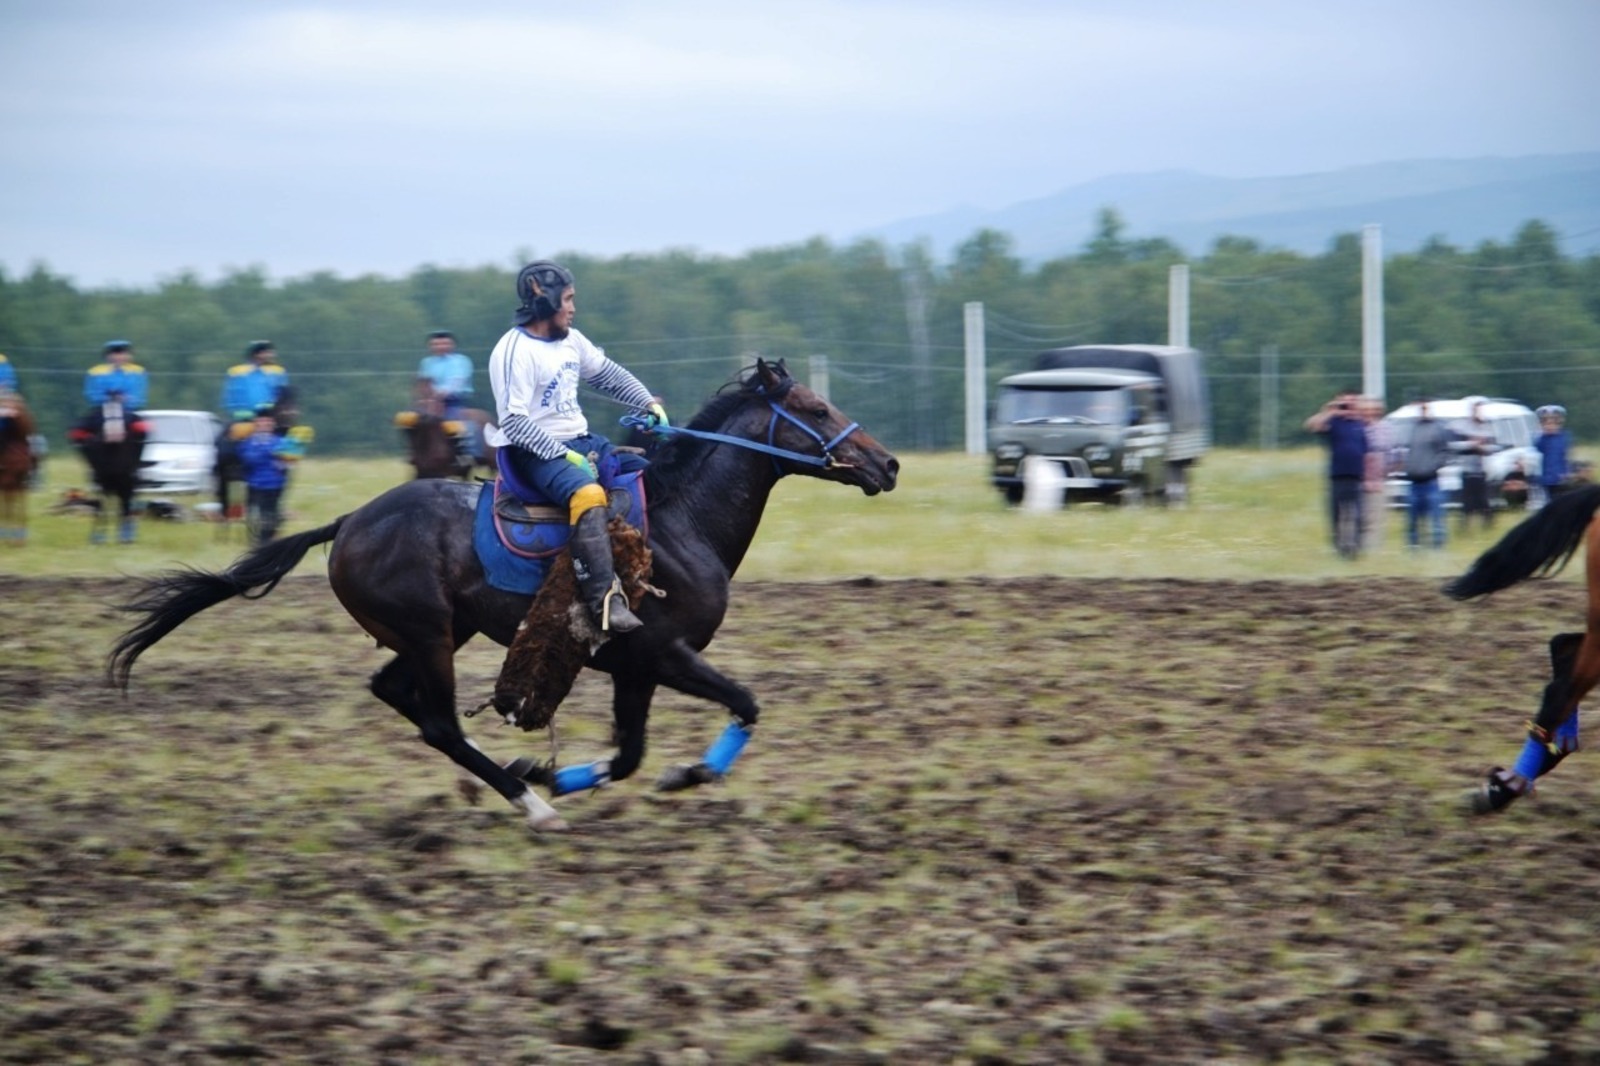 Национальная игра «Ылак» (козлодрание) открыла фестиваль башкирской лошади в Башкирии